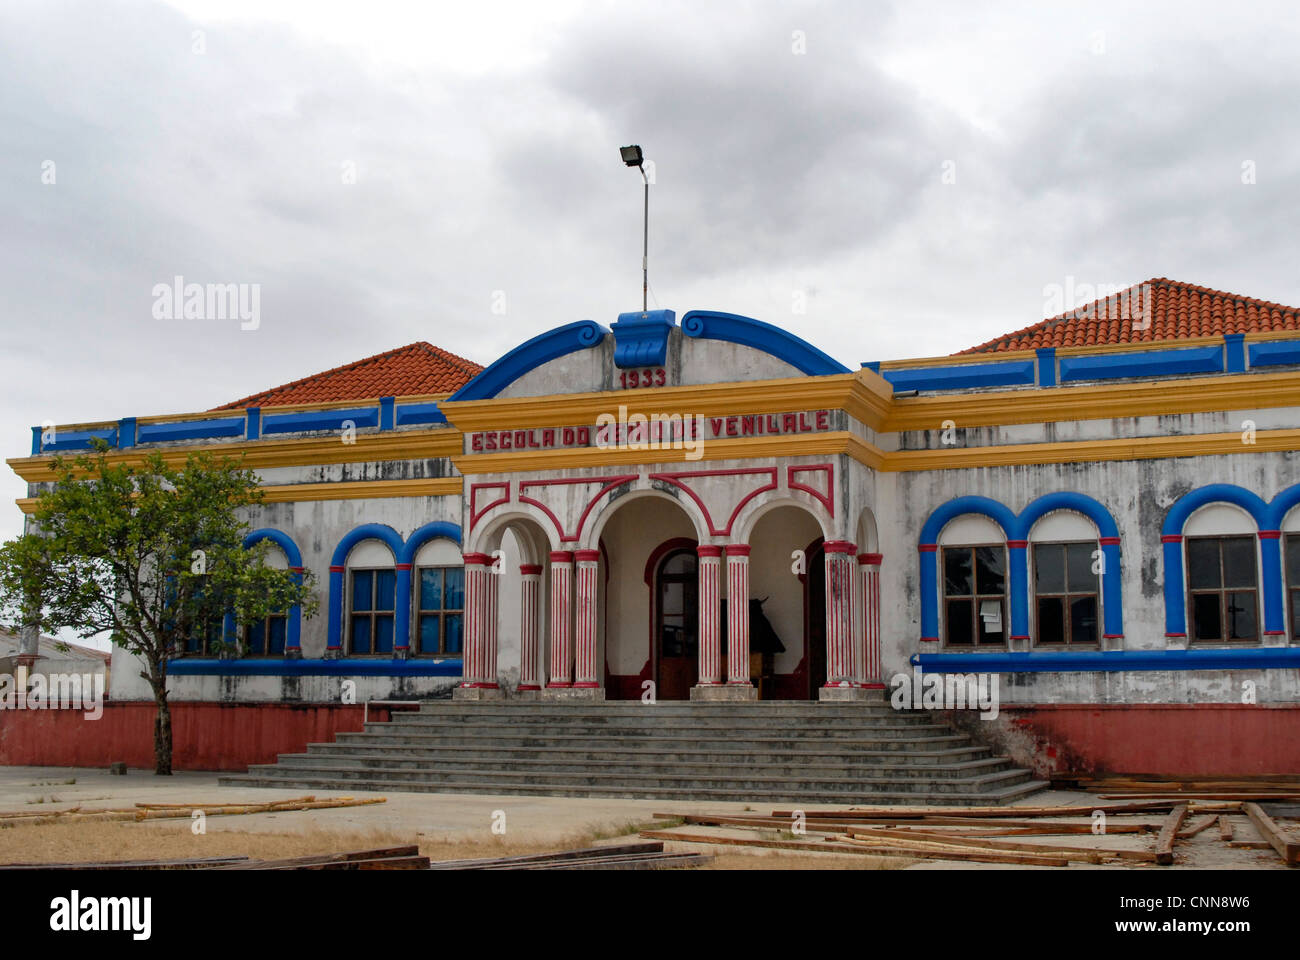 Escola Reino de Venilale, ein Beispiel der portugiesischen kolonialen Architektur im Distrikt Baucau Osttimor. Stockfoto